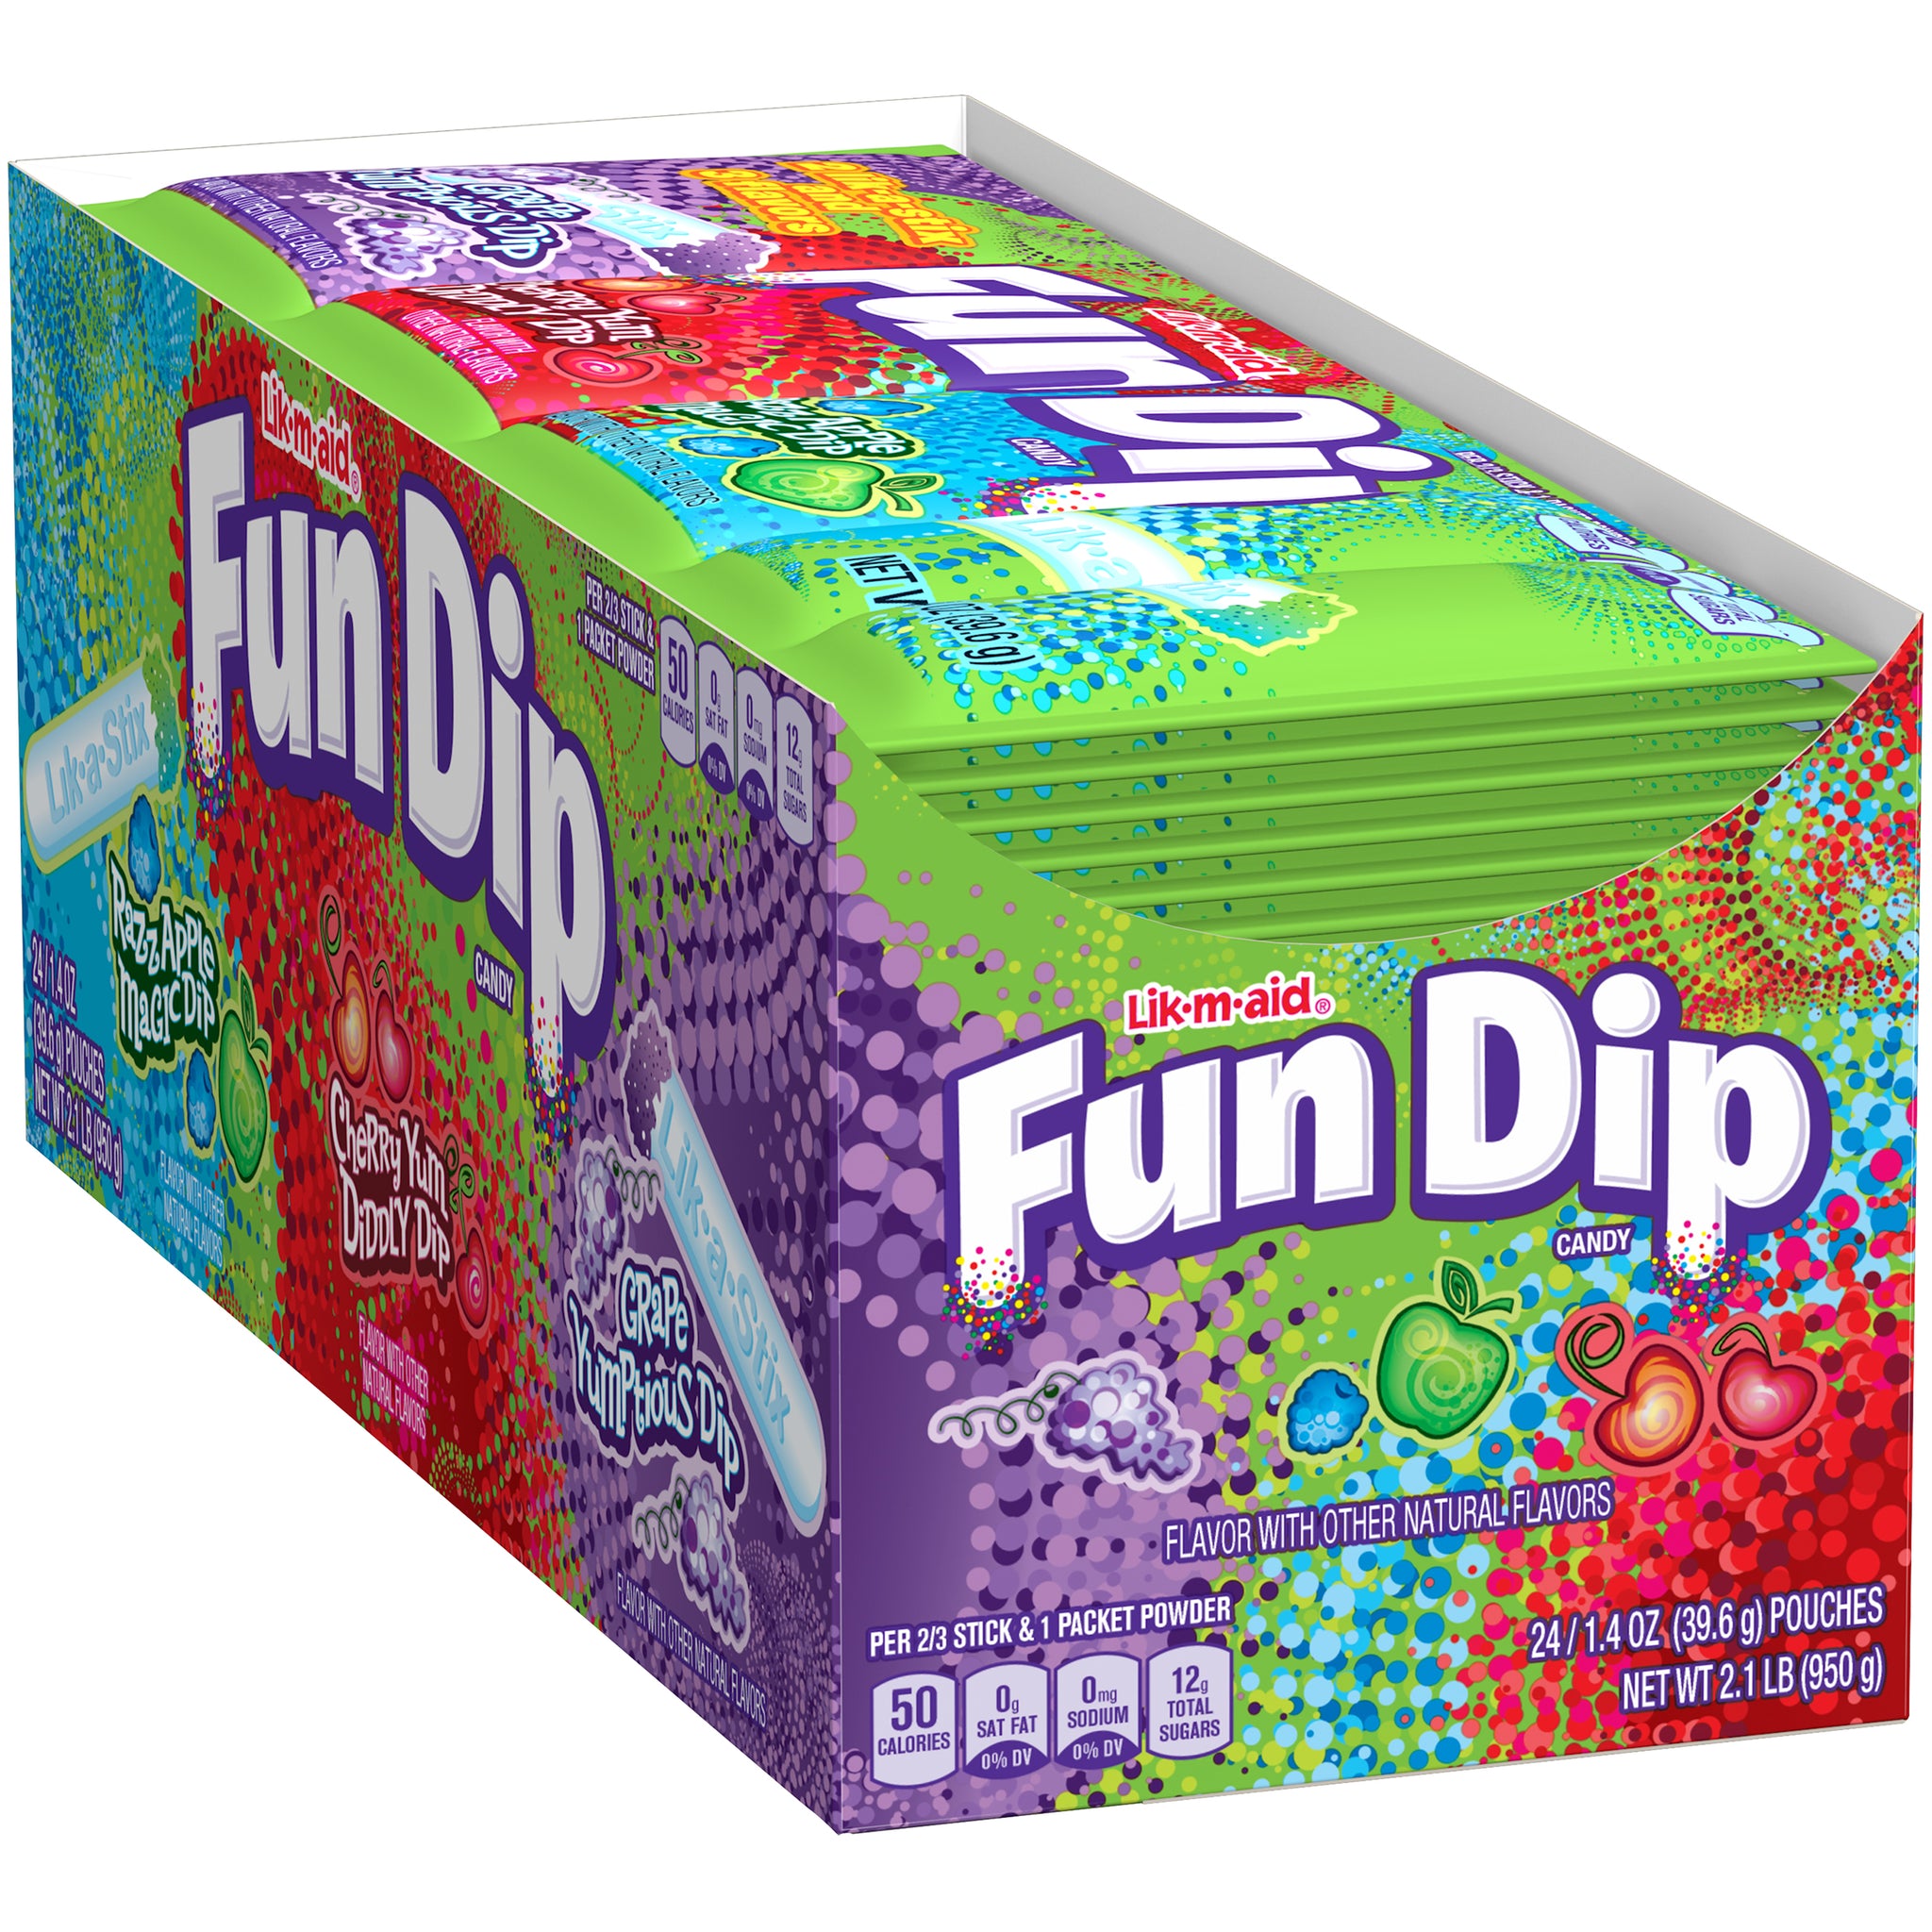 Lik-m-aid Fun Dip Candy - 1.4-oz. Pack